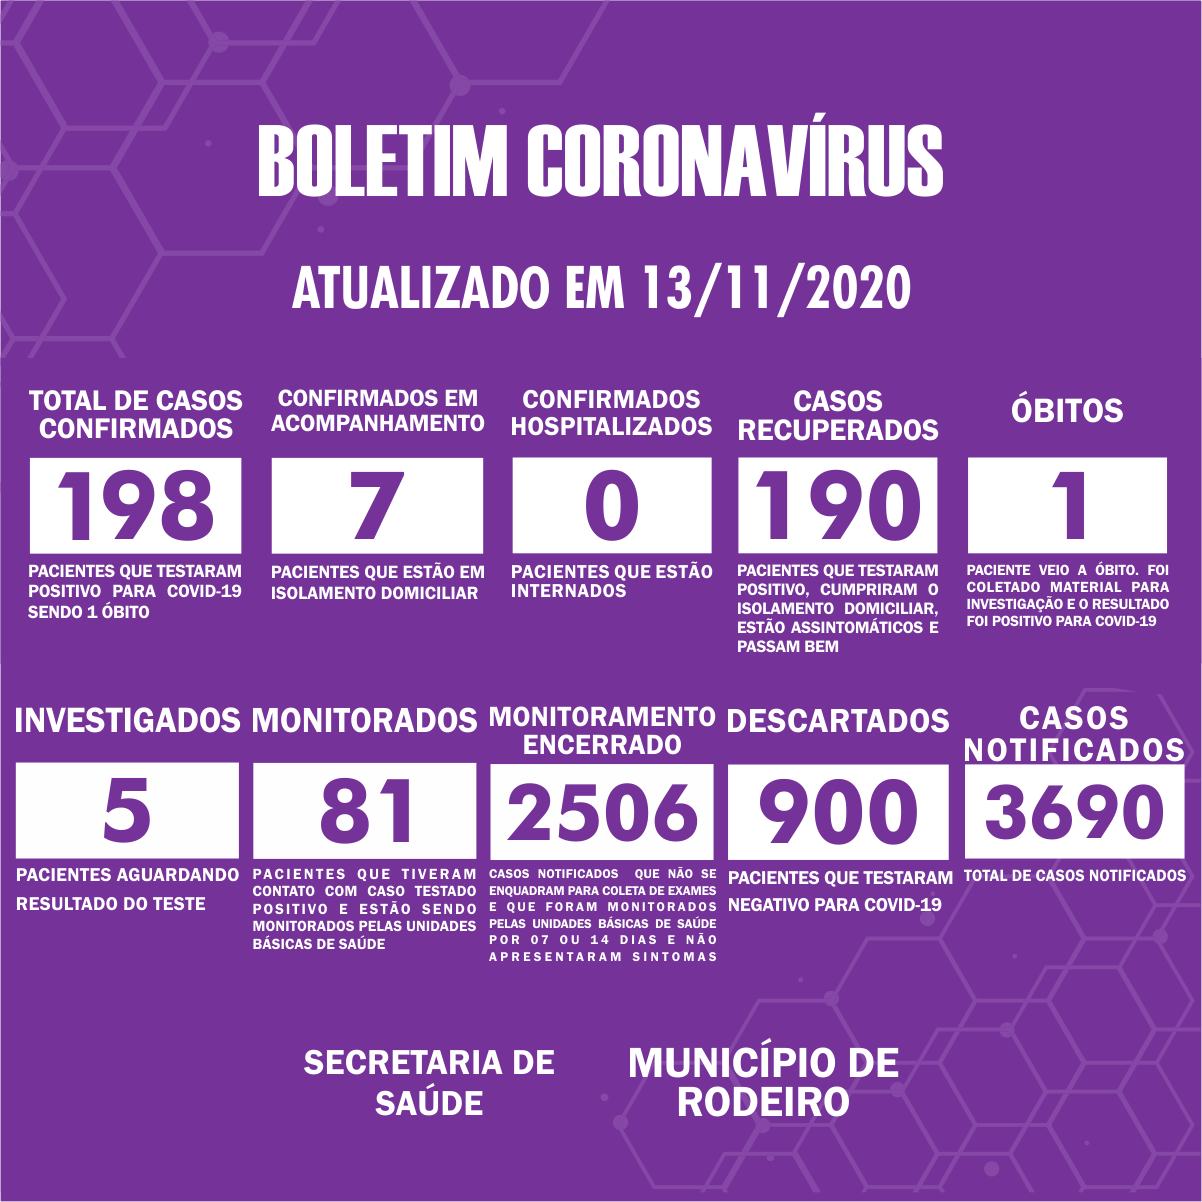 Boletim Epidemiológico do Município de Rodeiro sobre coronavírus, atualizado em 13/11/2020